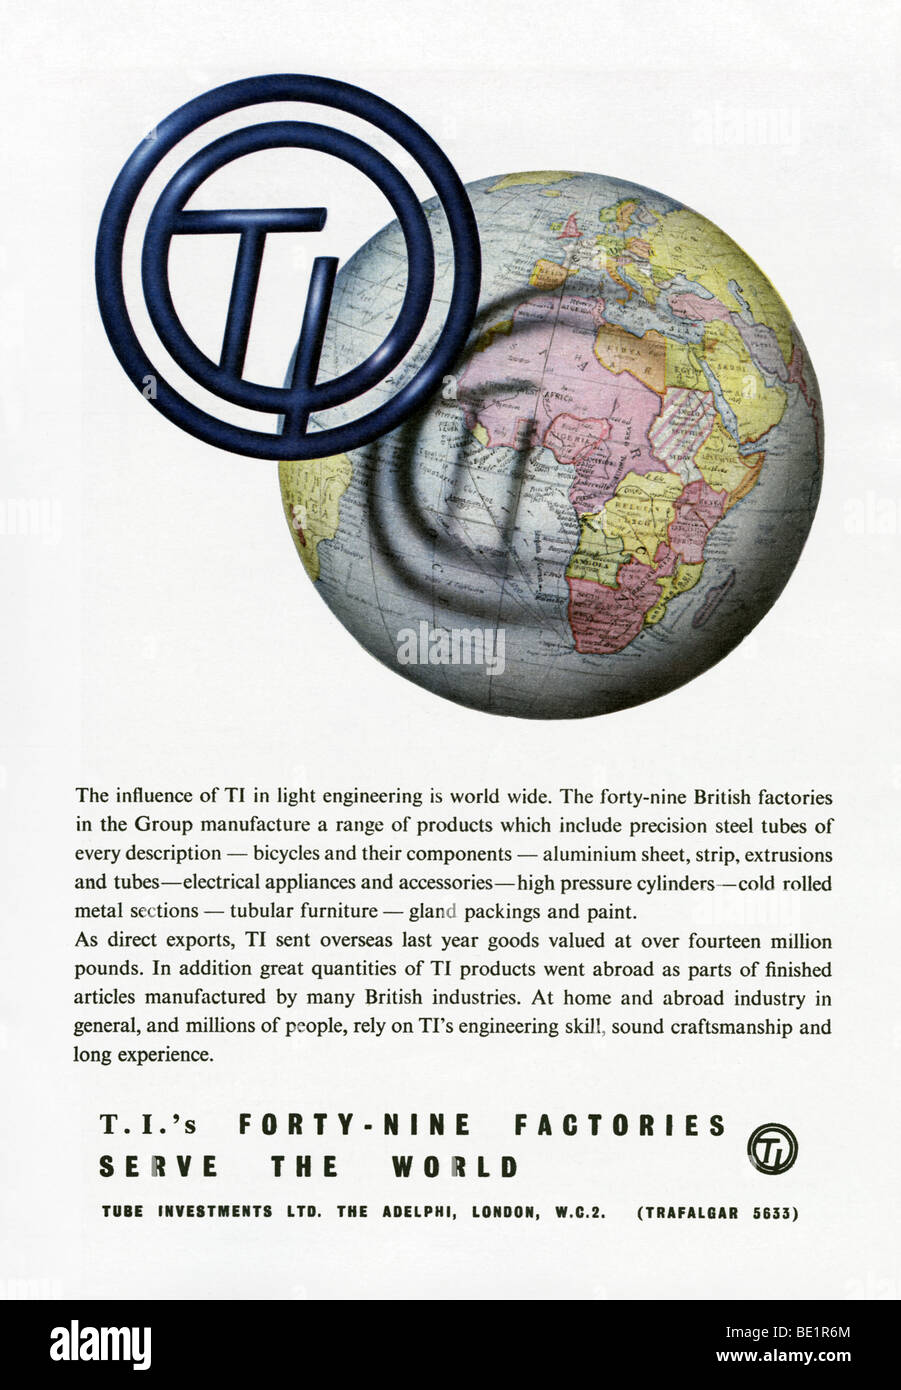 1951 pubblicità per TI (tubo di investimenti) Foto Stock